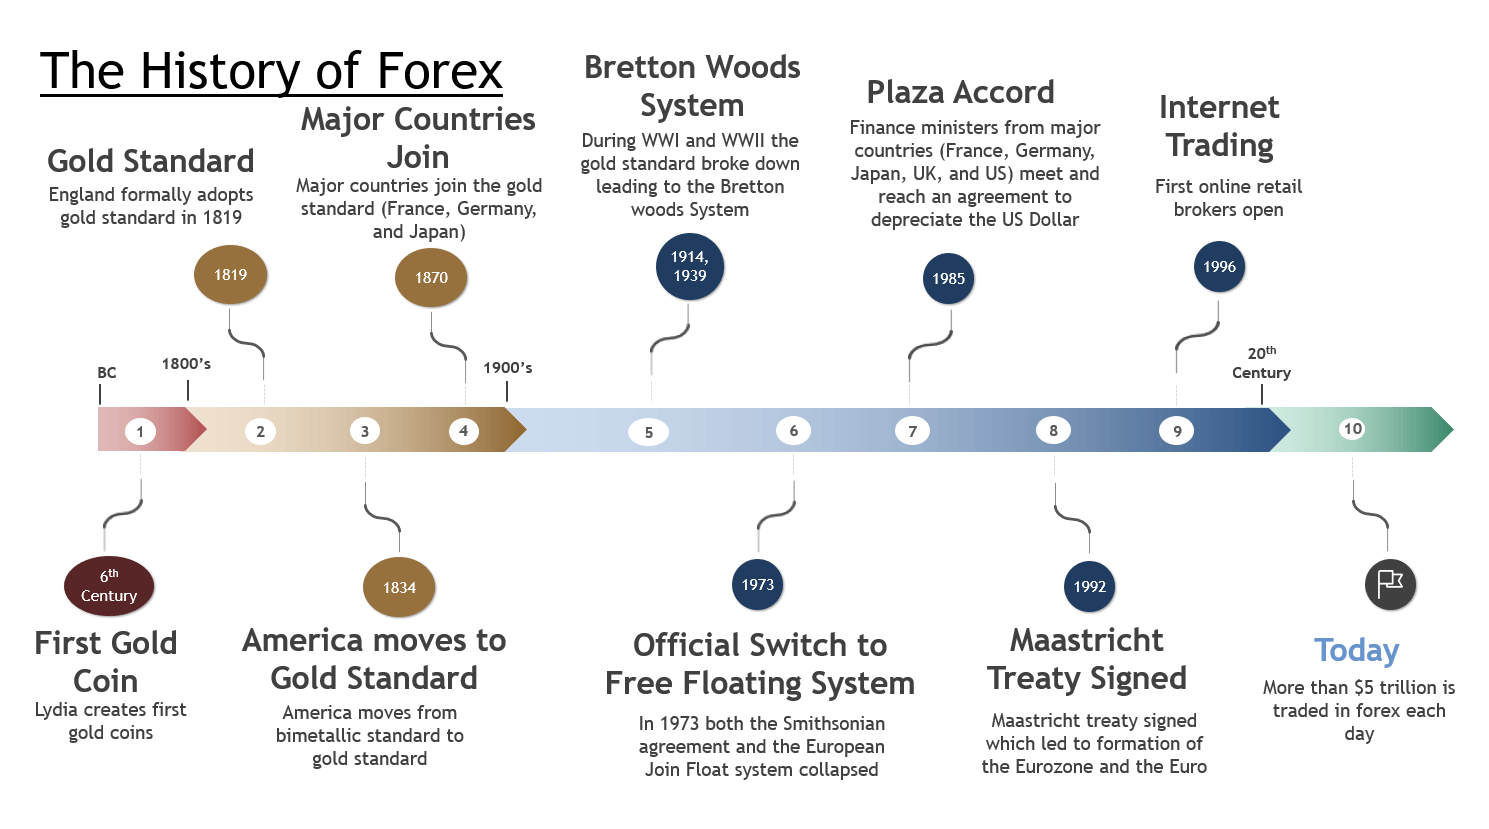 Dòng thời gian cho thấy lịch sử của forex kể từ những năm 1800